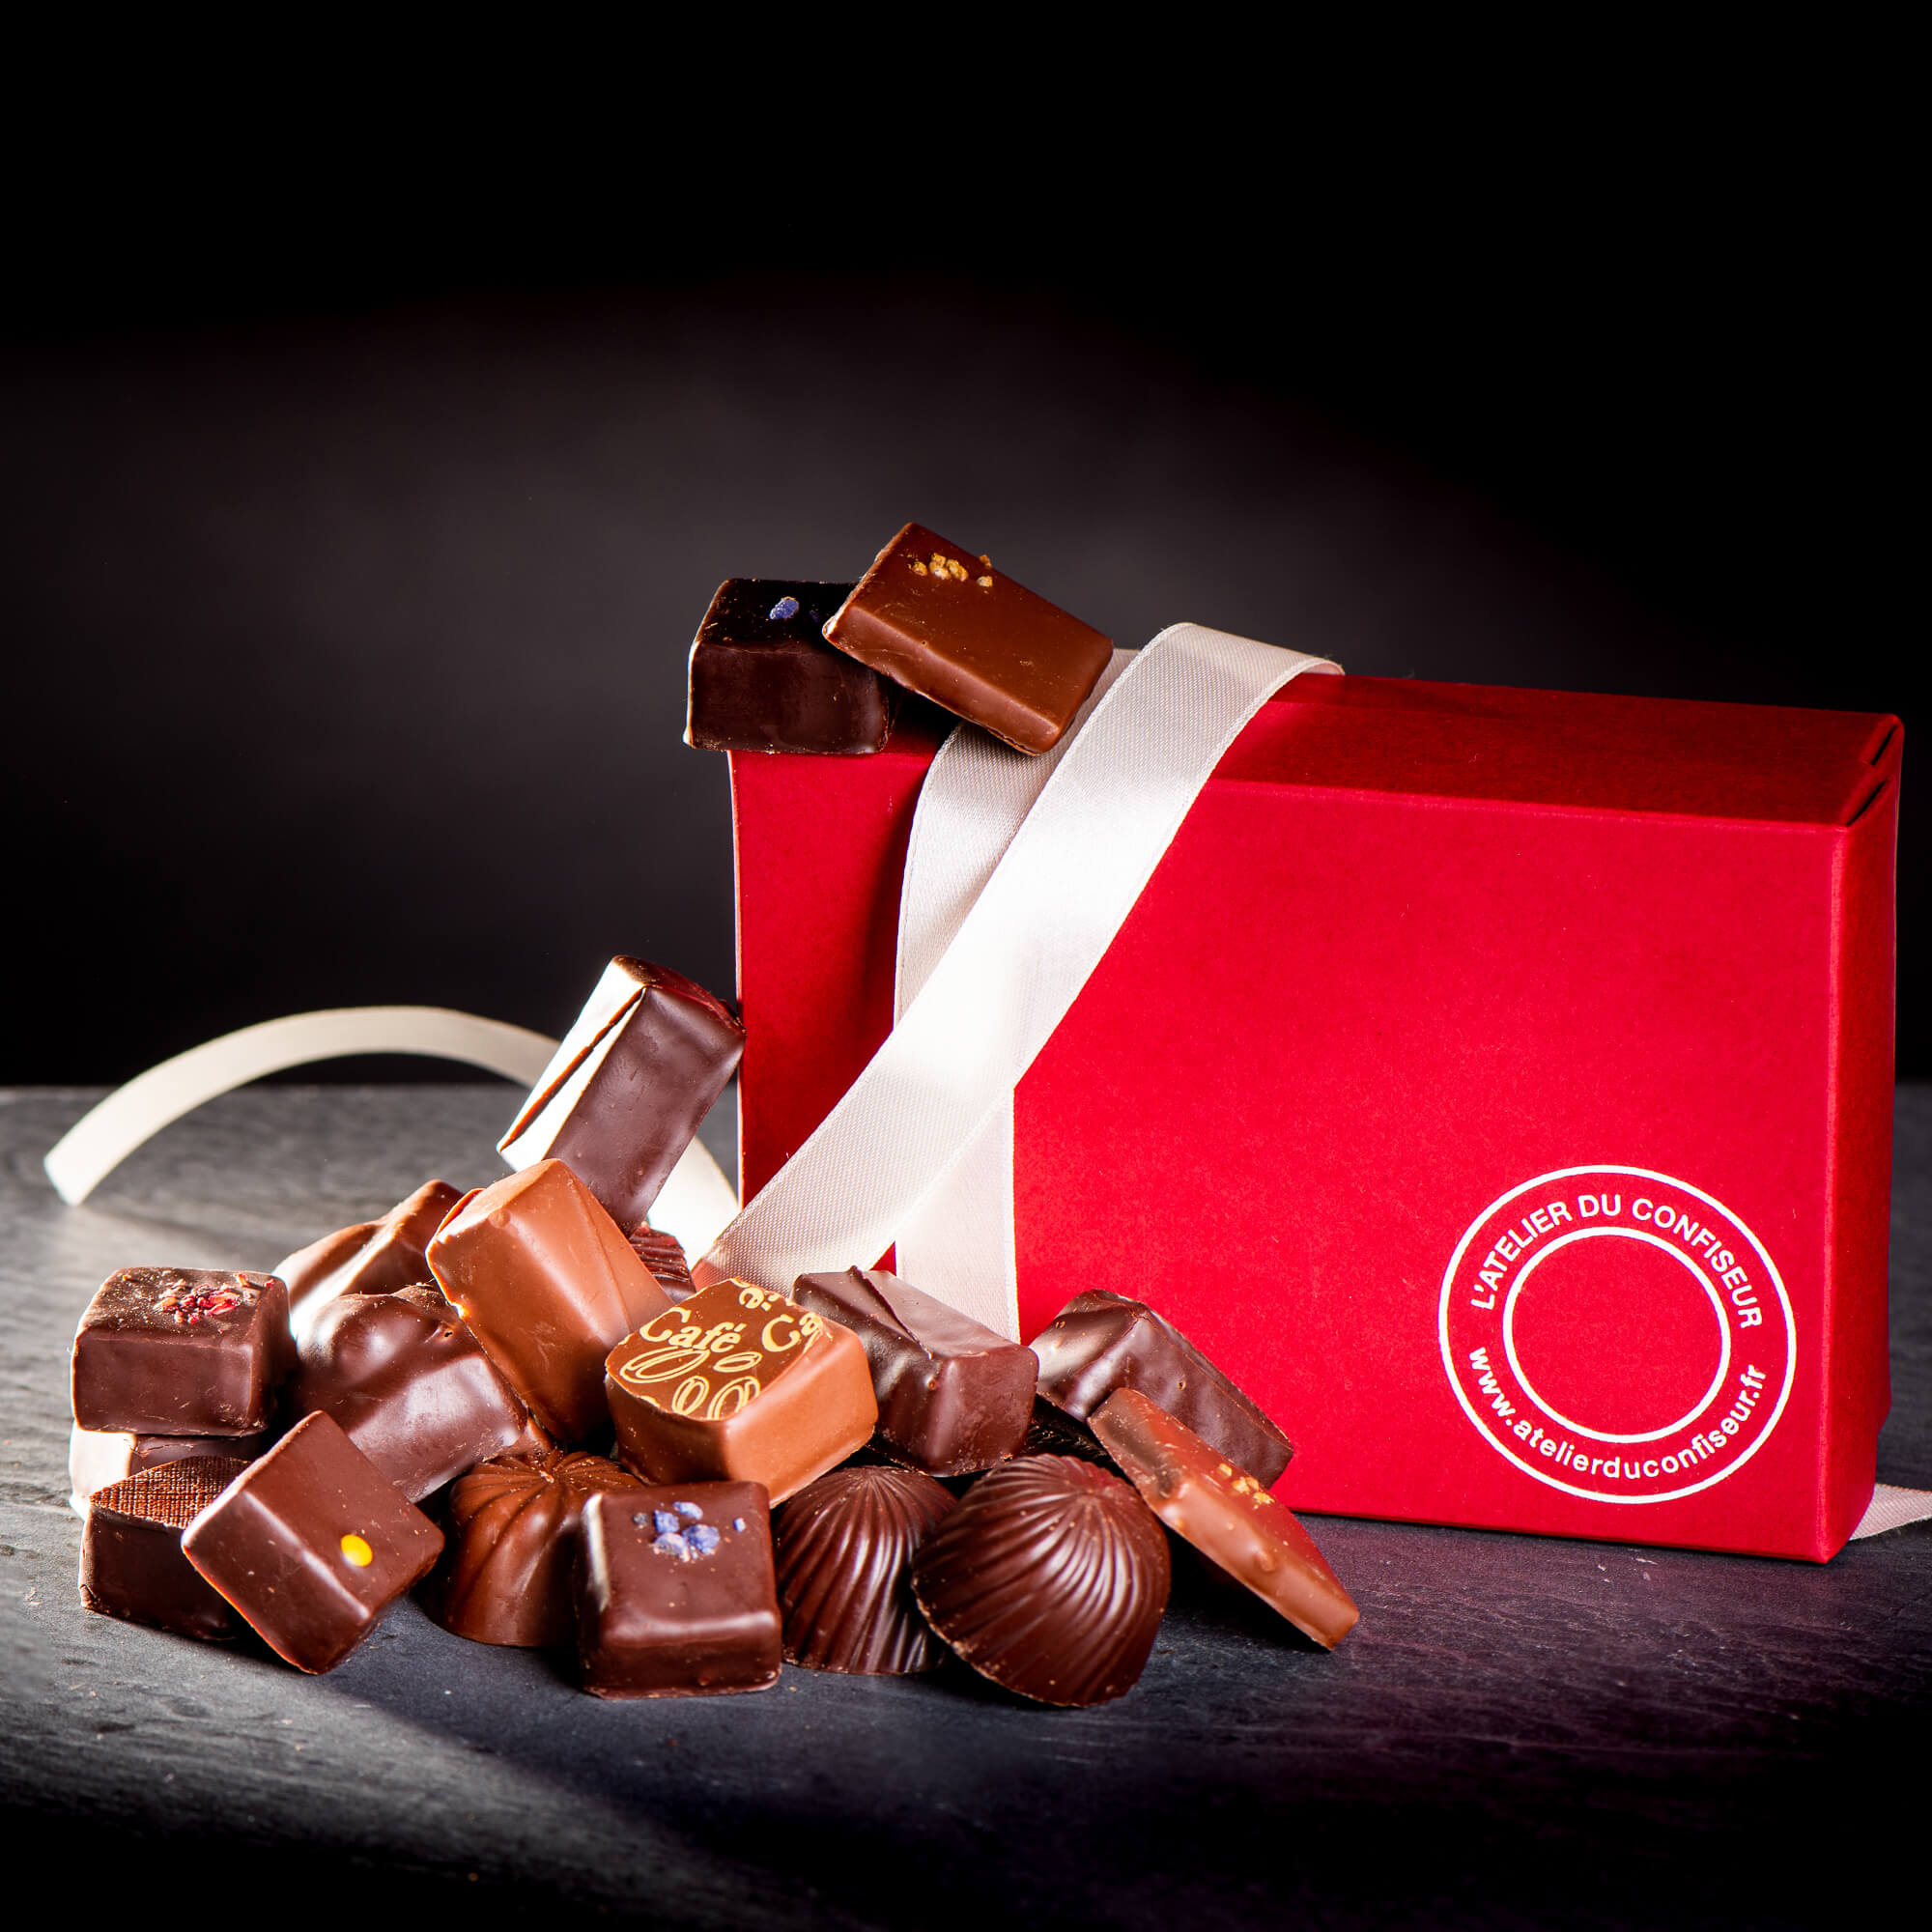 Ballotin Chocolat Lait - Atelier du confiseur